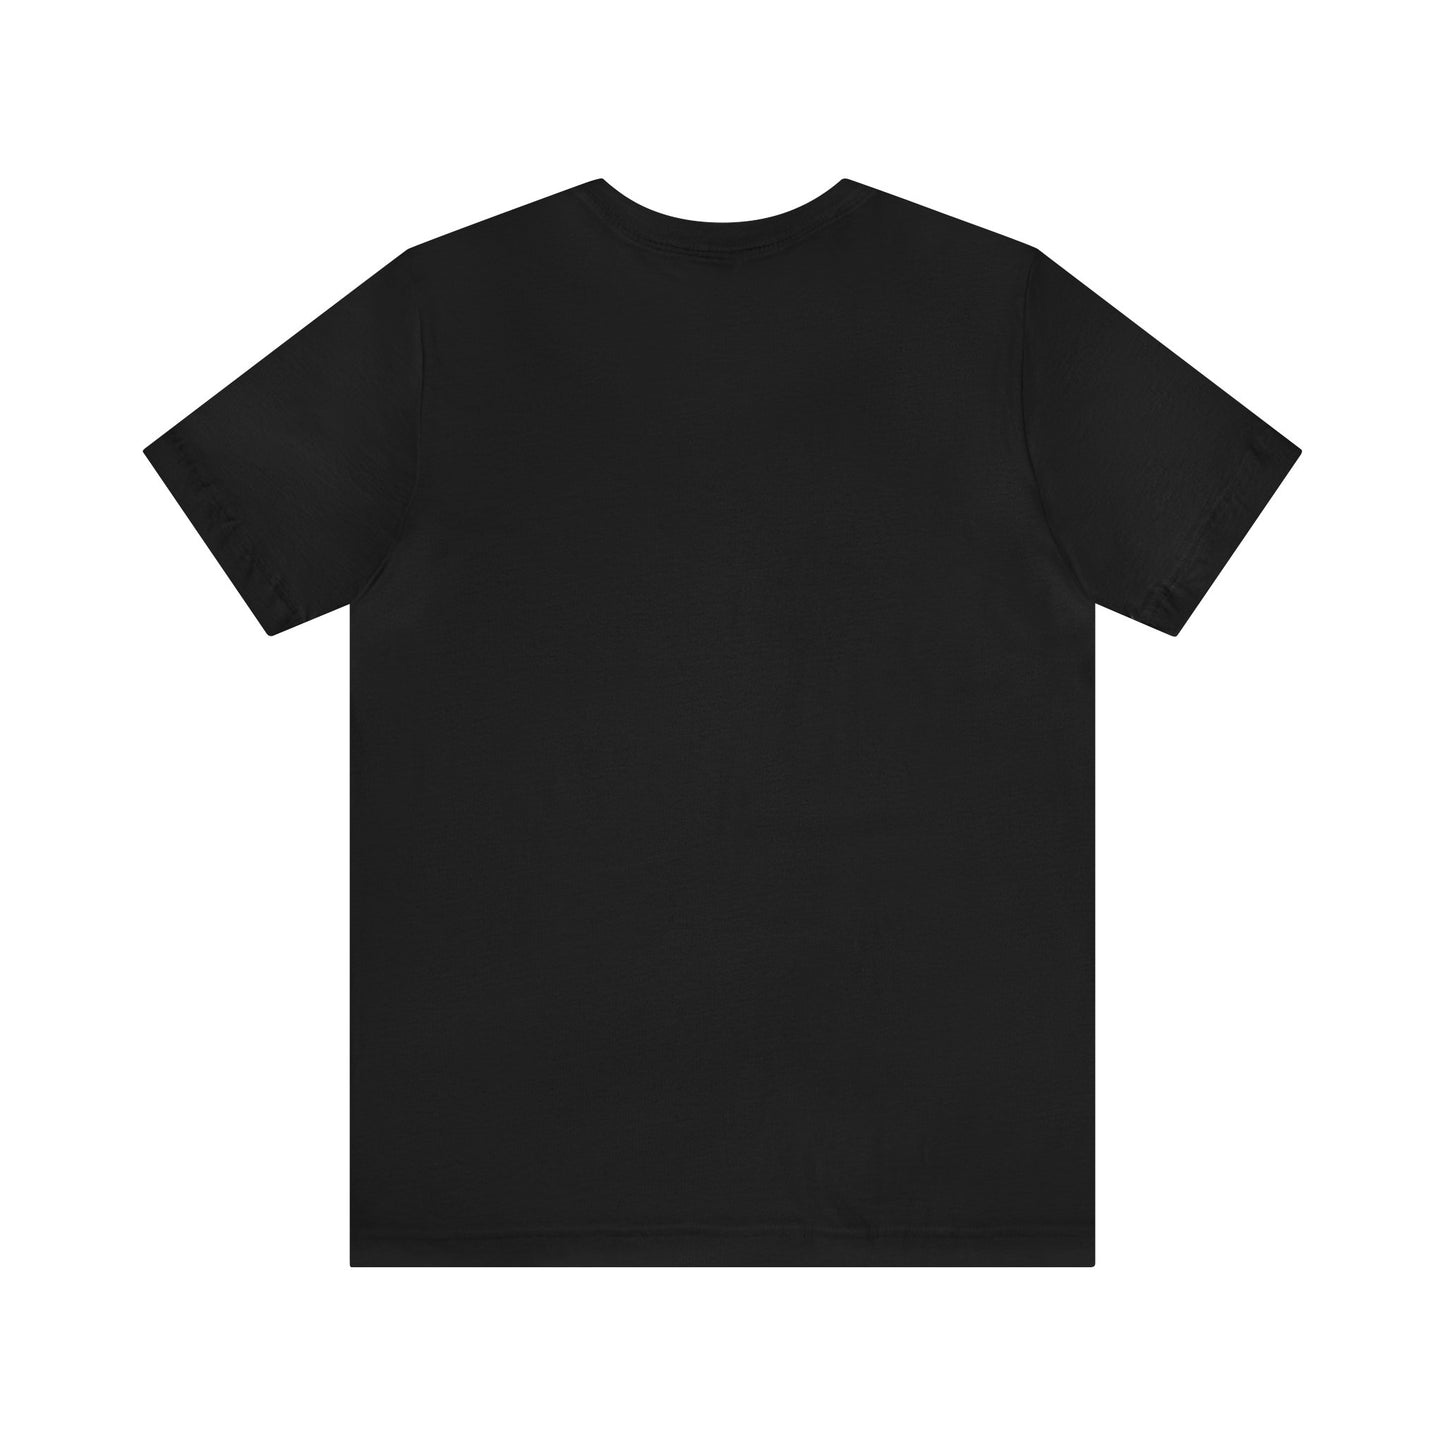 Unisex T-shirt Seagul